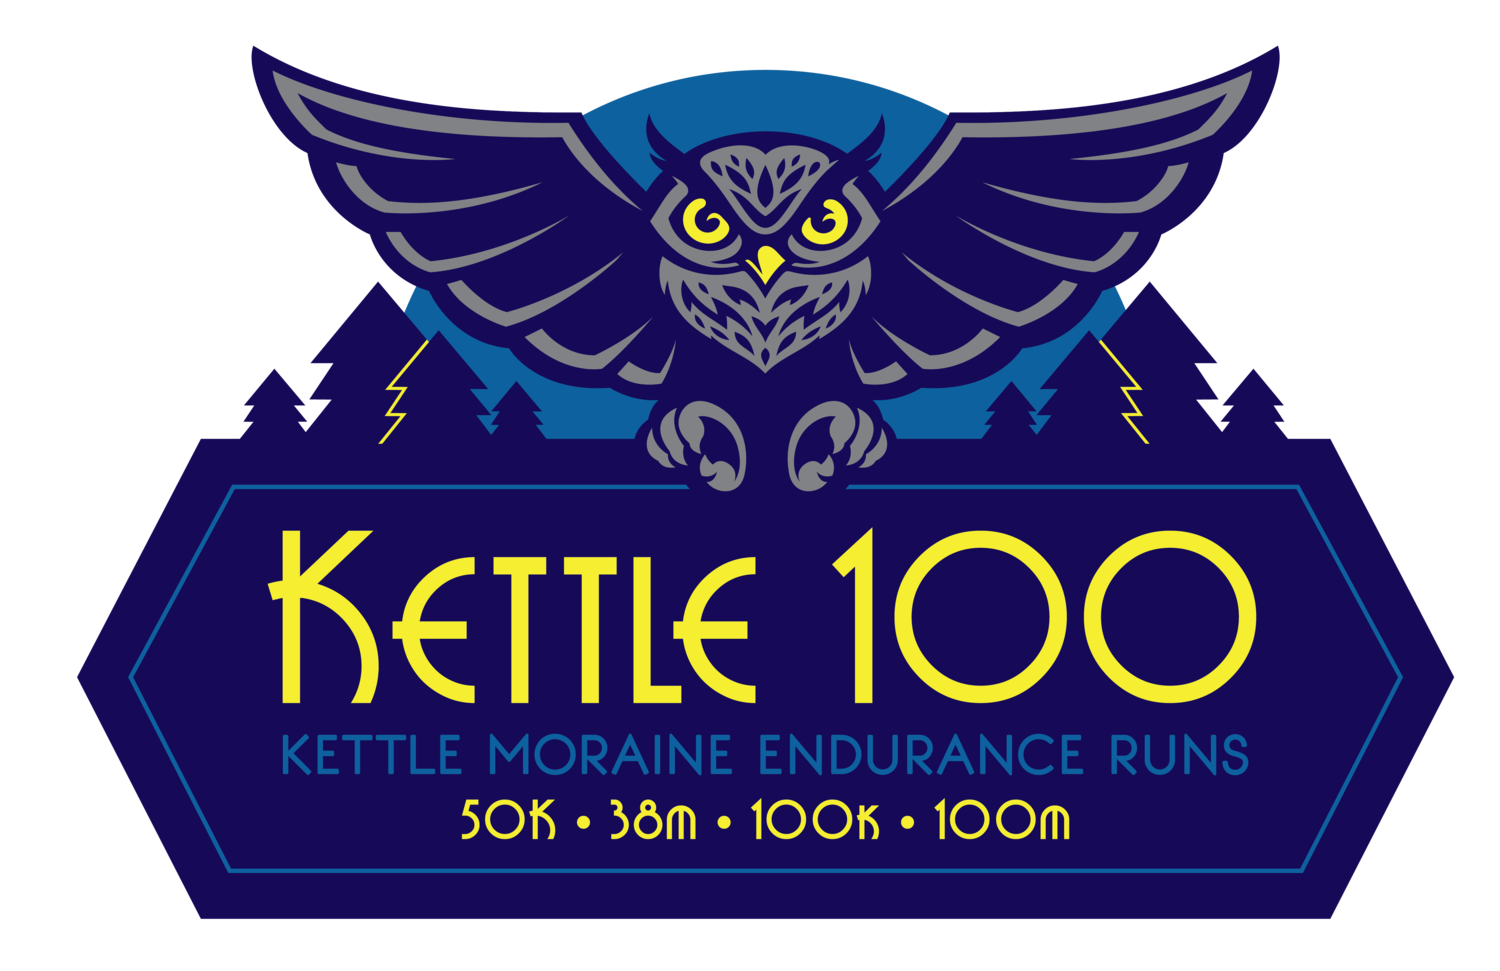 Kettle Moraine 100 Endurance Runs logo on RaceRaves